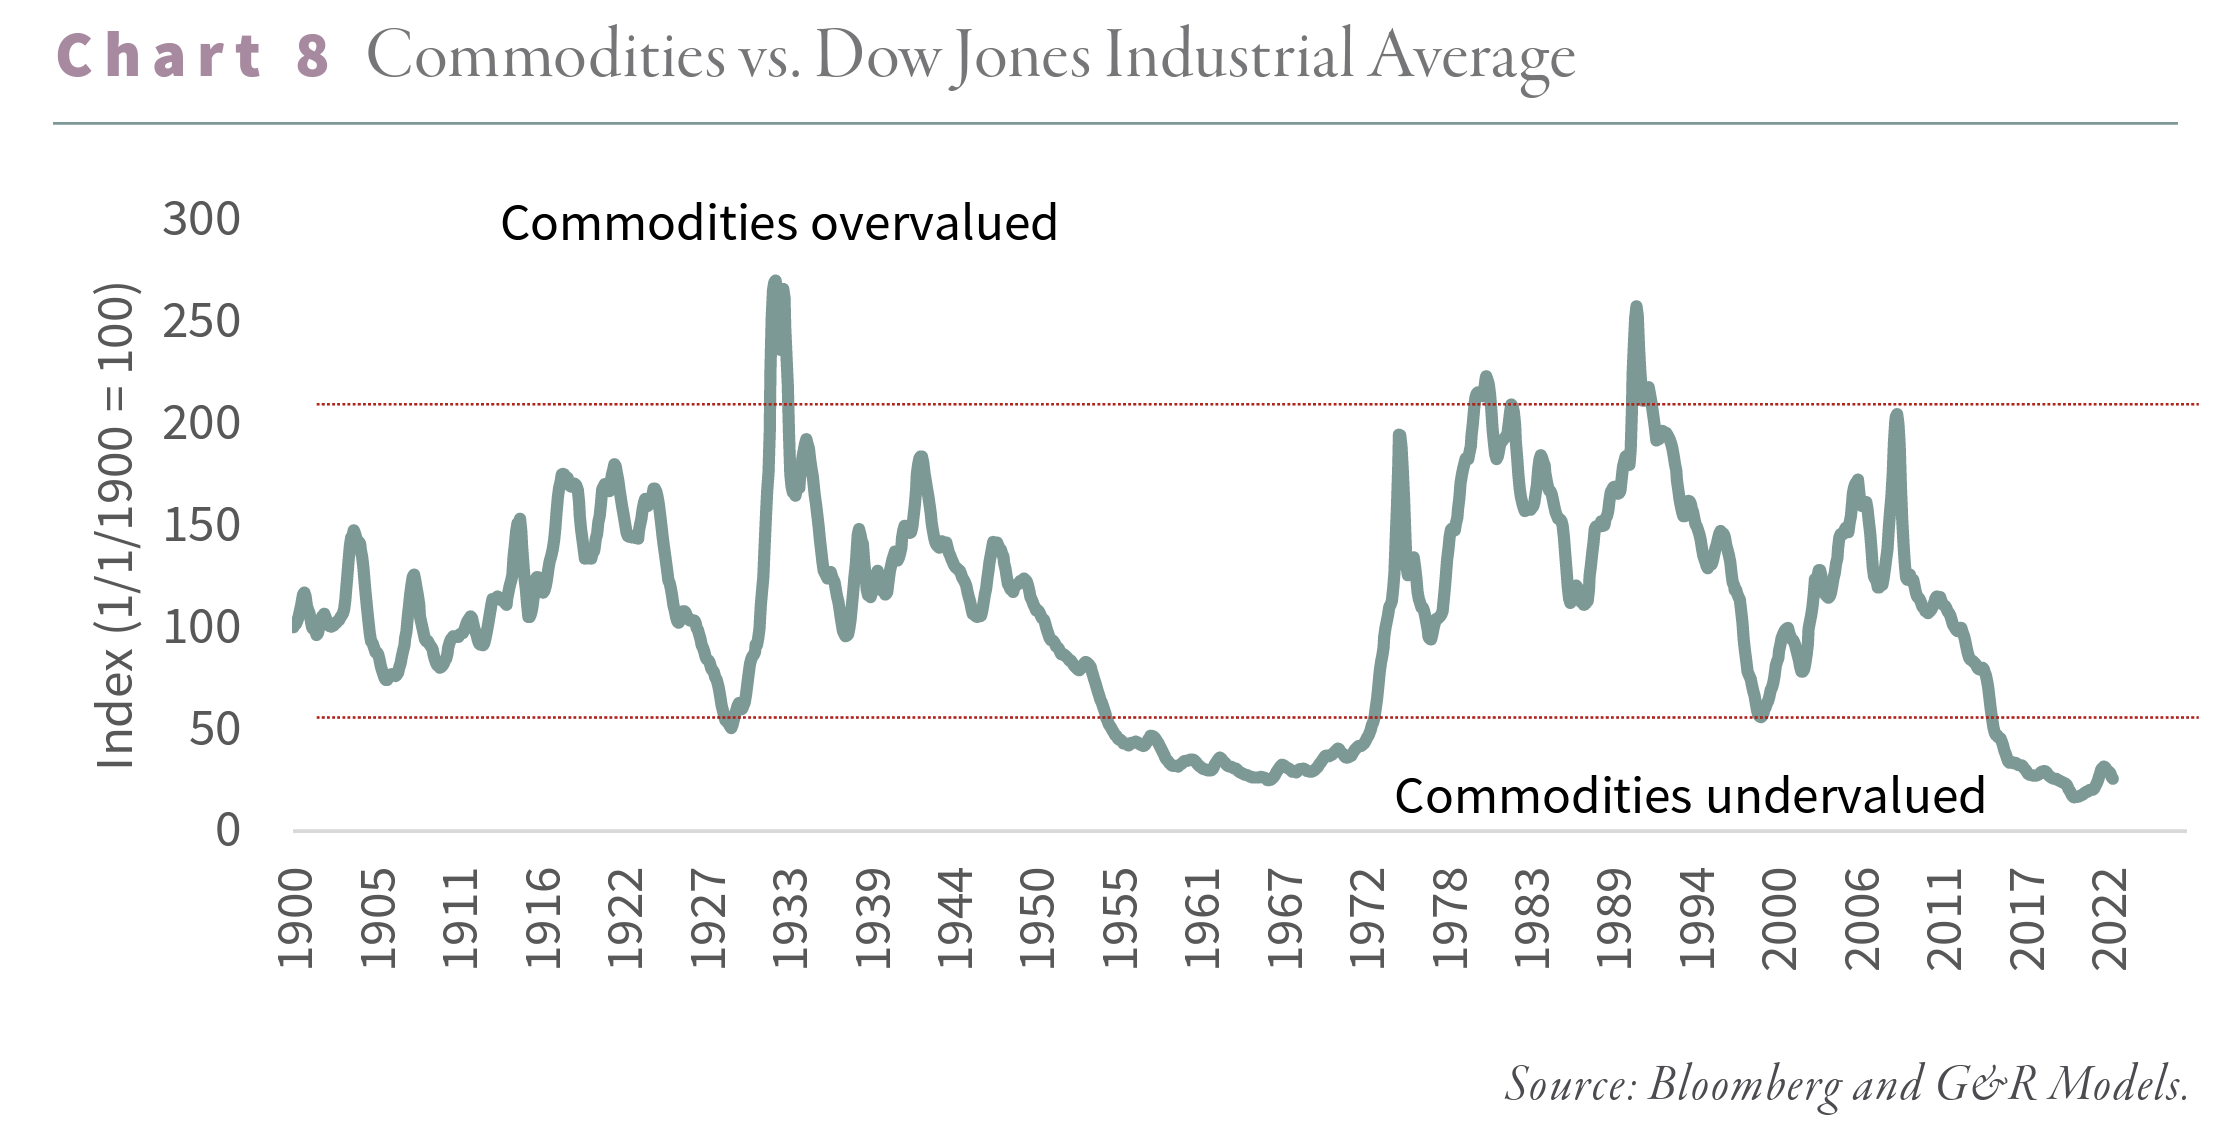 Commodities vs. Dow Jones Industrial Average